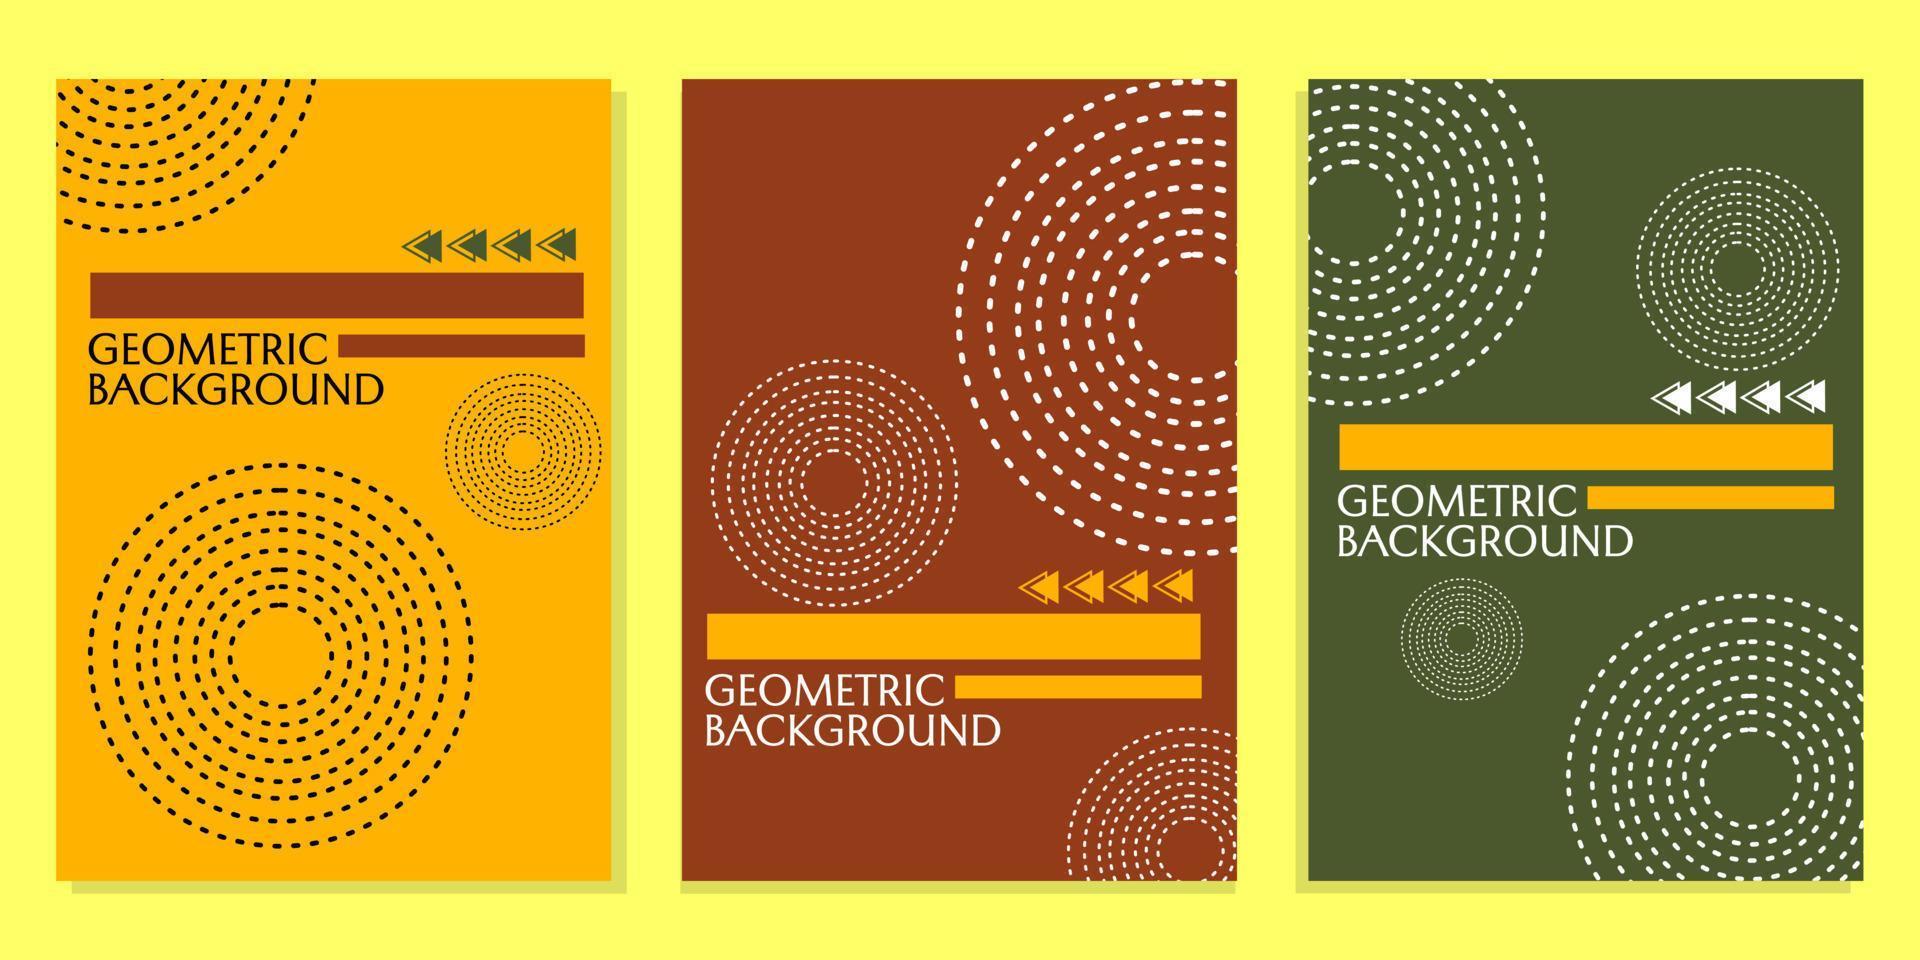 conjunto de diseños de portada en colores naranja, rojo y verde en un estilo abstracto moderno y dinámico. adecuado para plantillas de portada de libros, informes, presentaciones vector